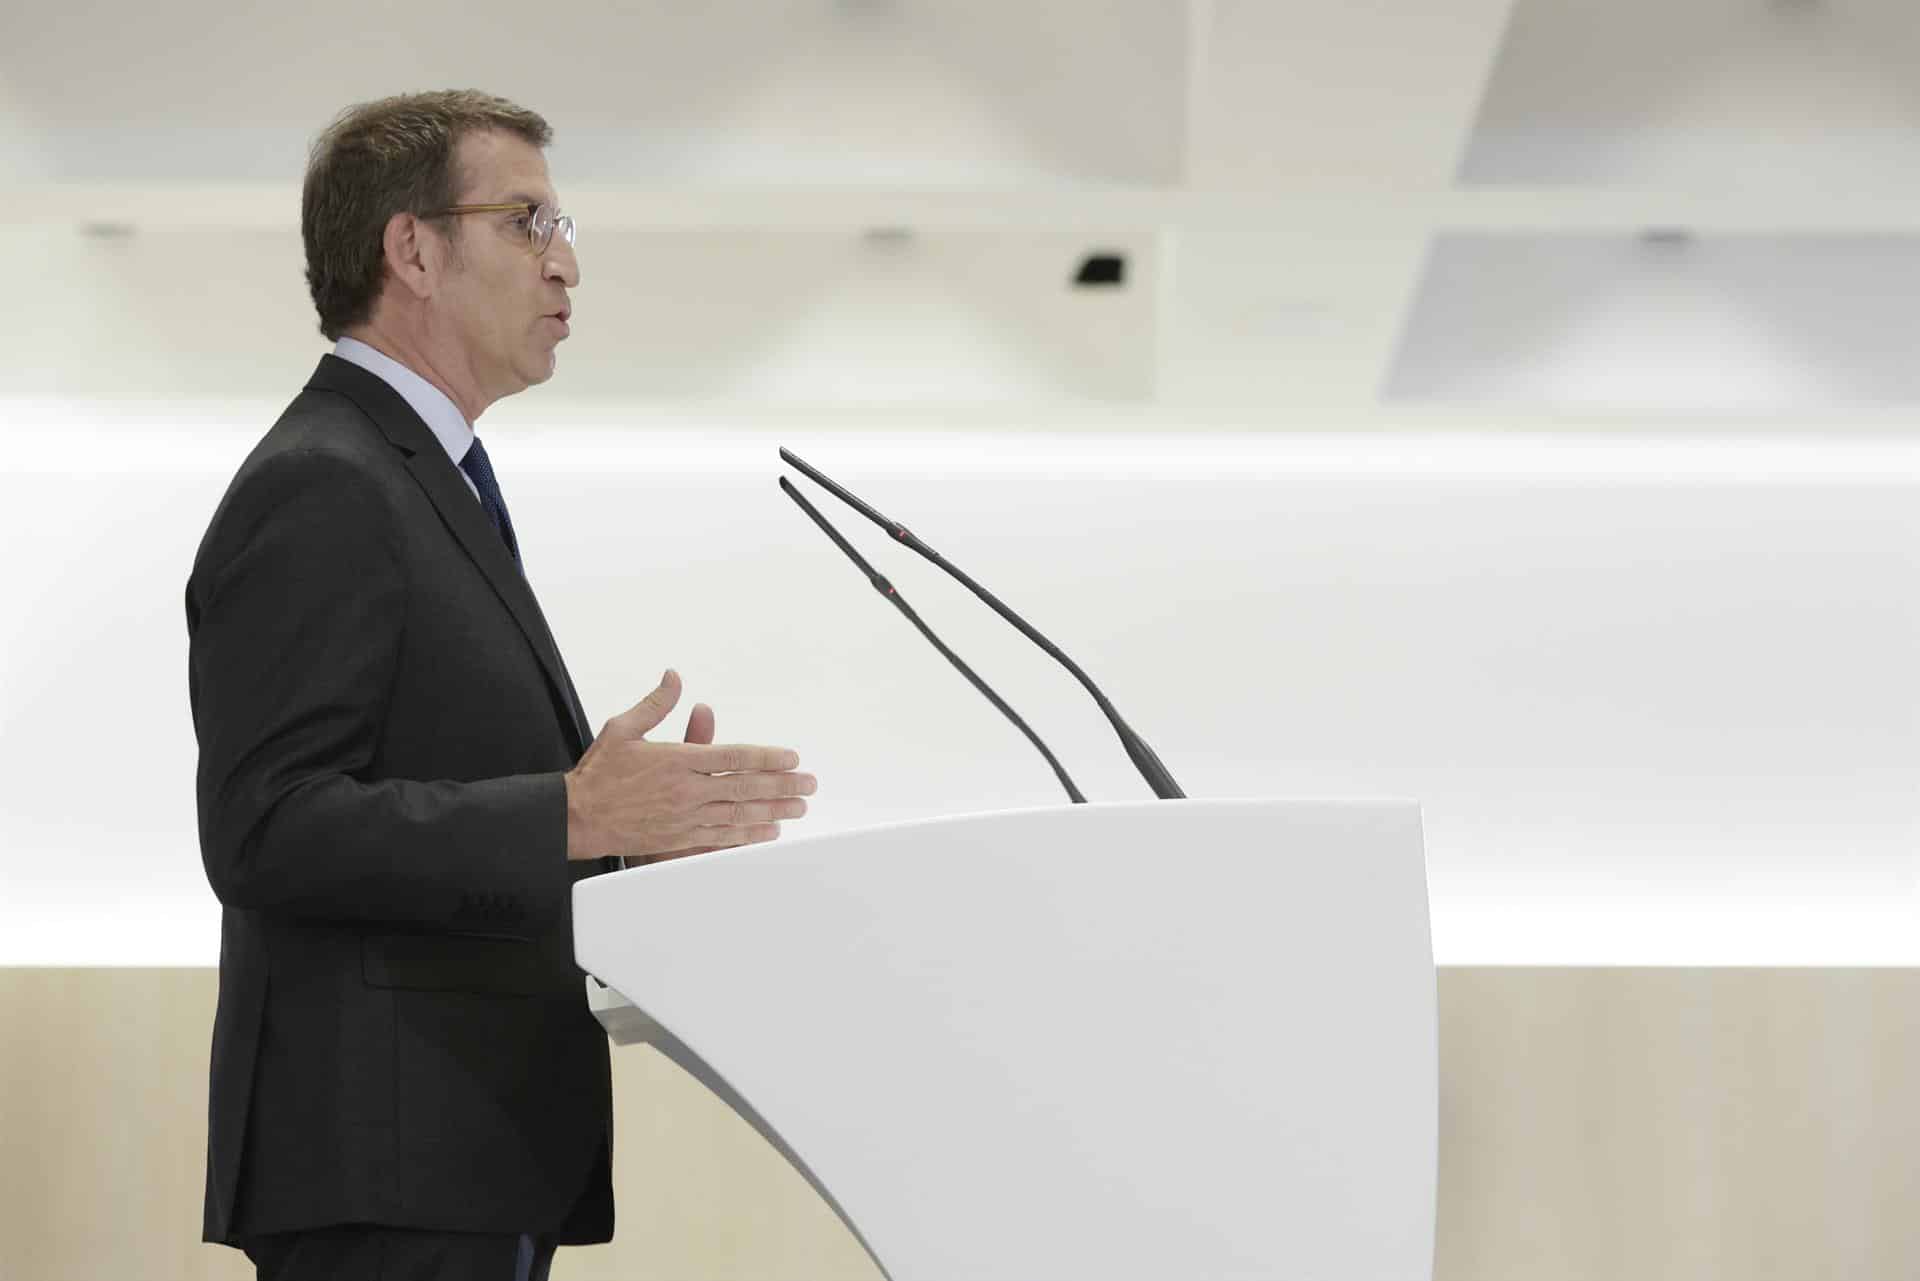 El presidente del PP, Alberto Núñez Feijóo, interviene en un coloquio político en Barcelona, este jueves 7 de julio.